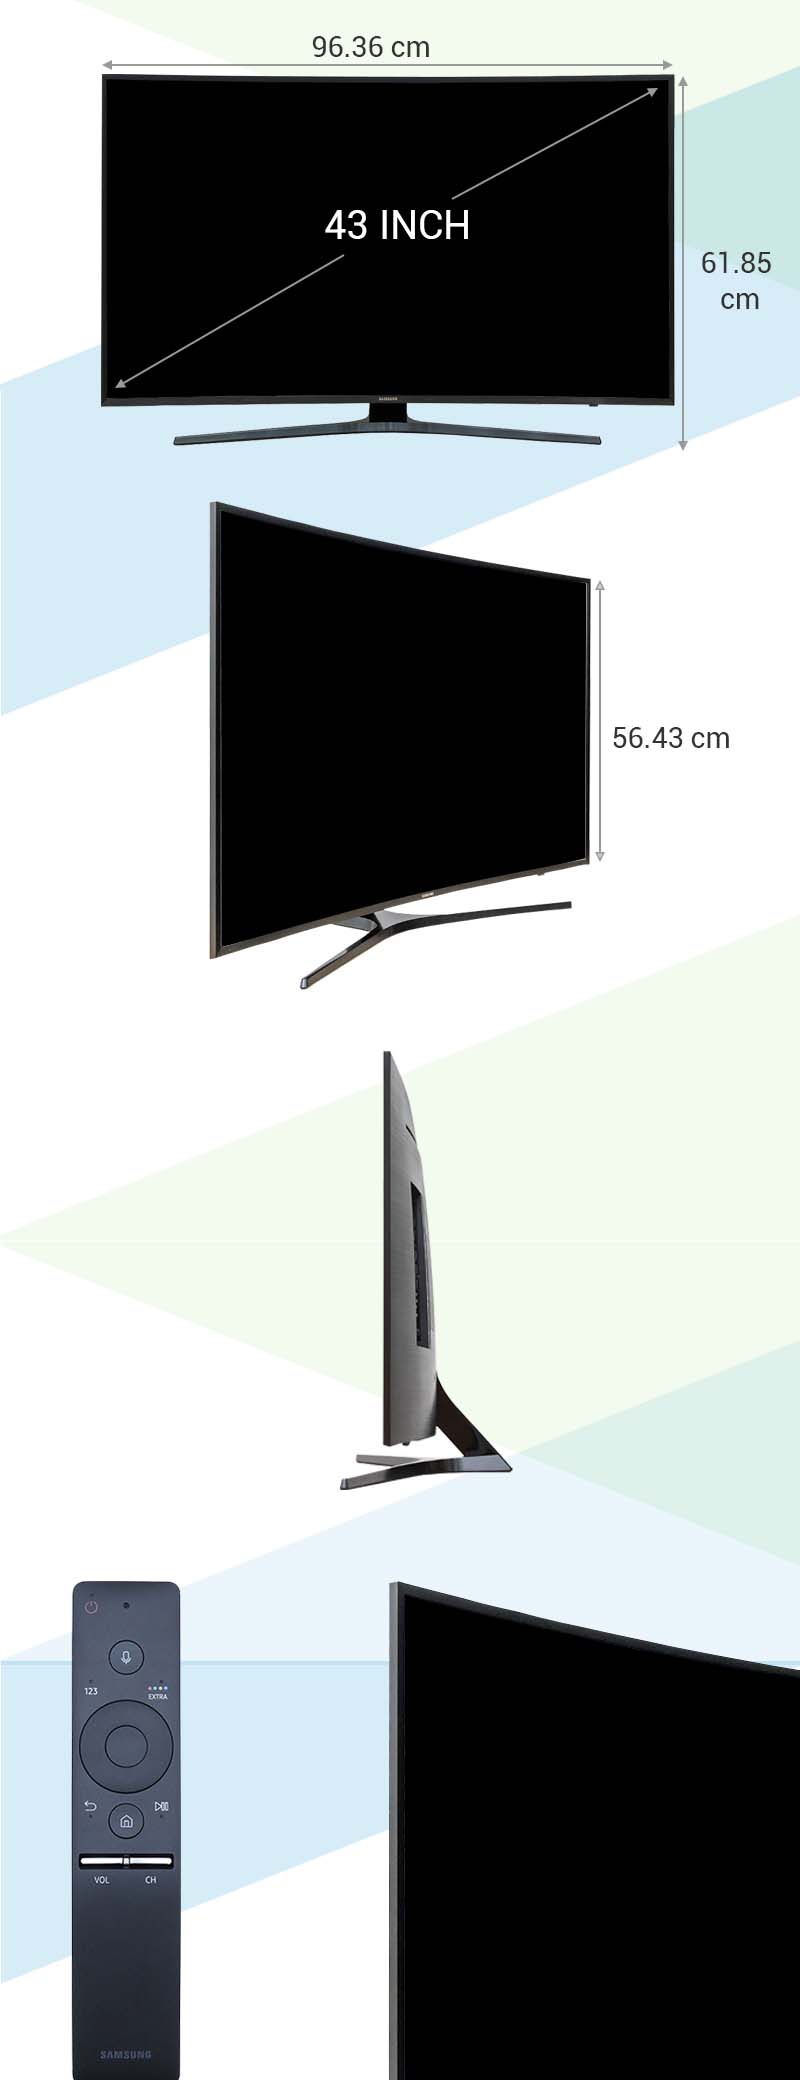 Smart Tivi Cong Samsung 43 inch UA43KU6500 - Kích thước tivi